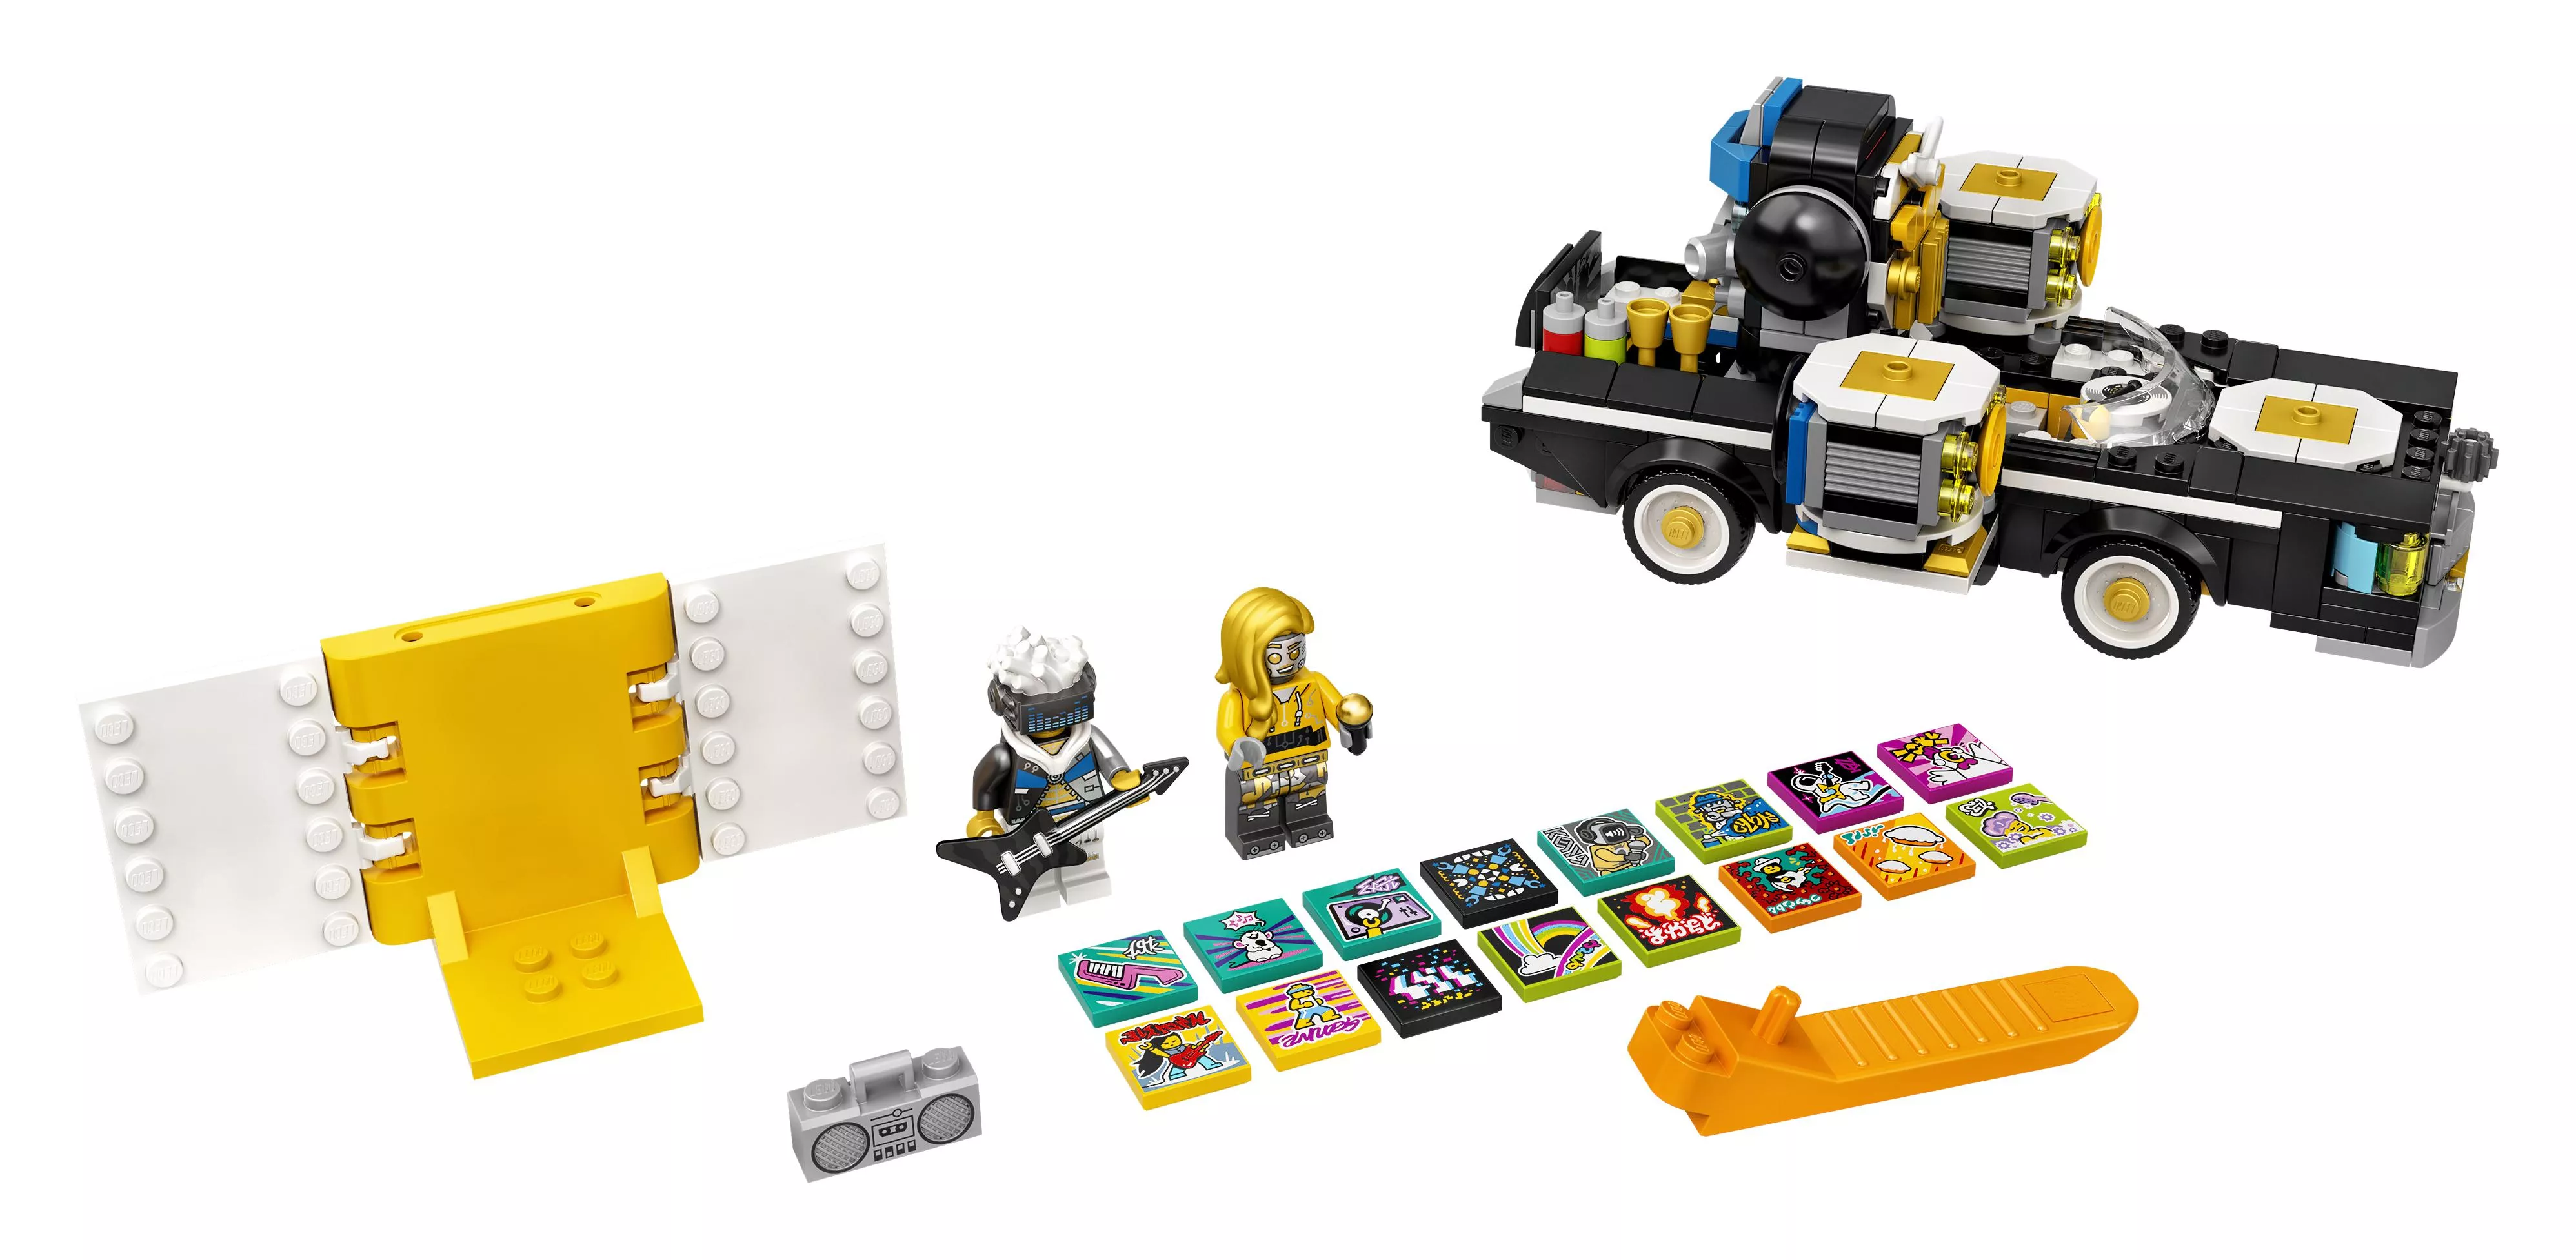 LEGO VIDIYO Robo HipHop Car